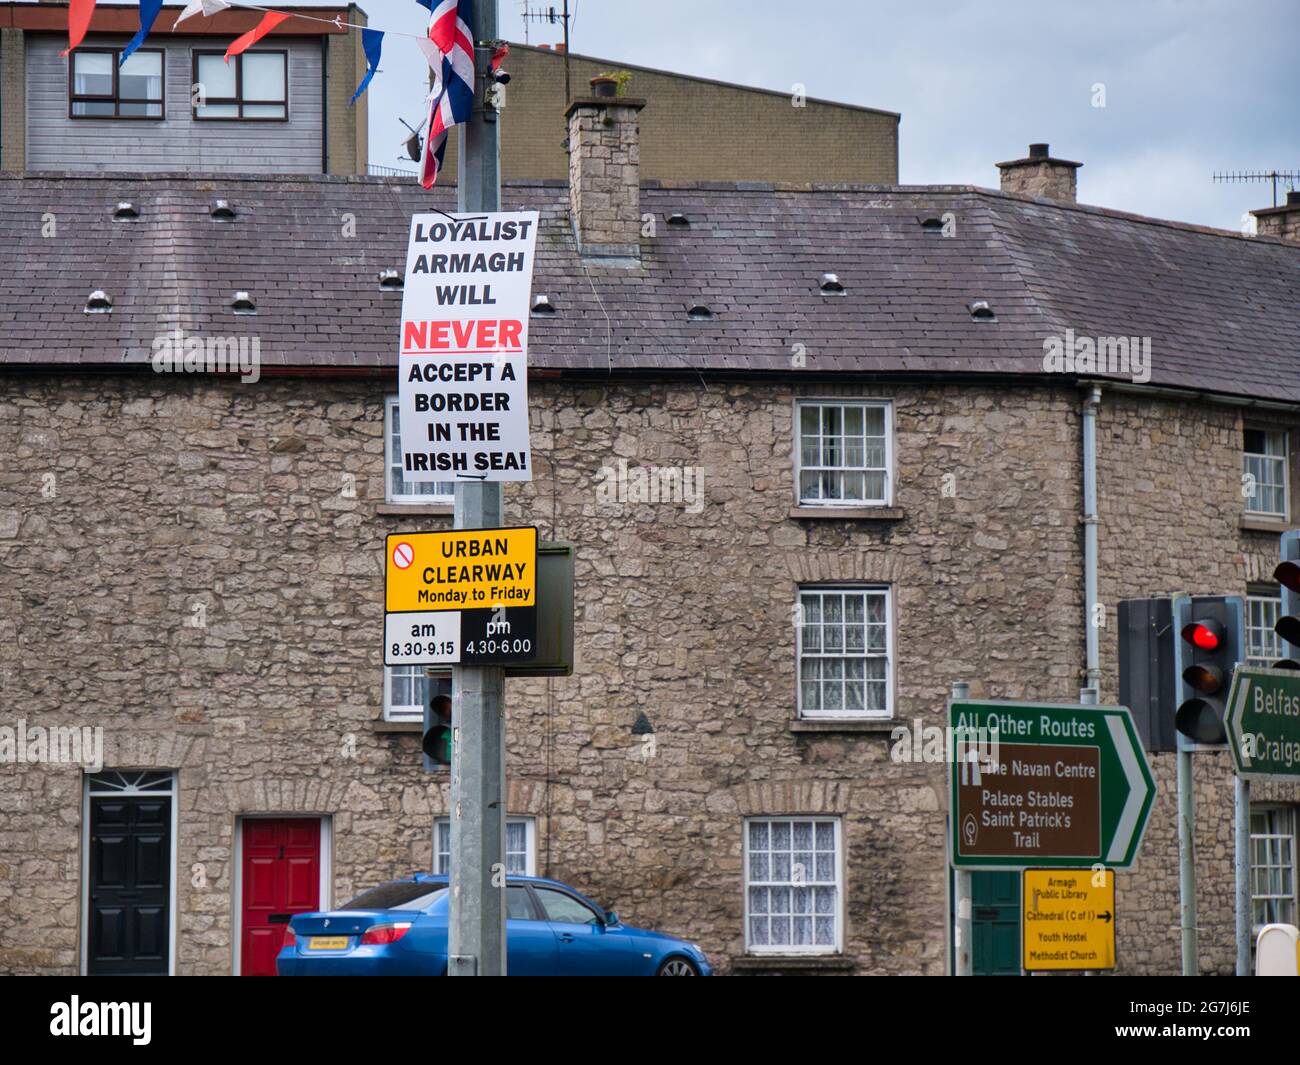 Un segno fissato a un lampione dà il messaggio che il popolo lealista di Armagh non accetta il protocollo dell'Irlanda del Nord, parte del pr Brexit del Regno Unito Foto Stock